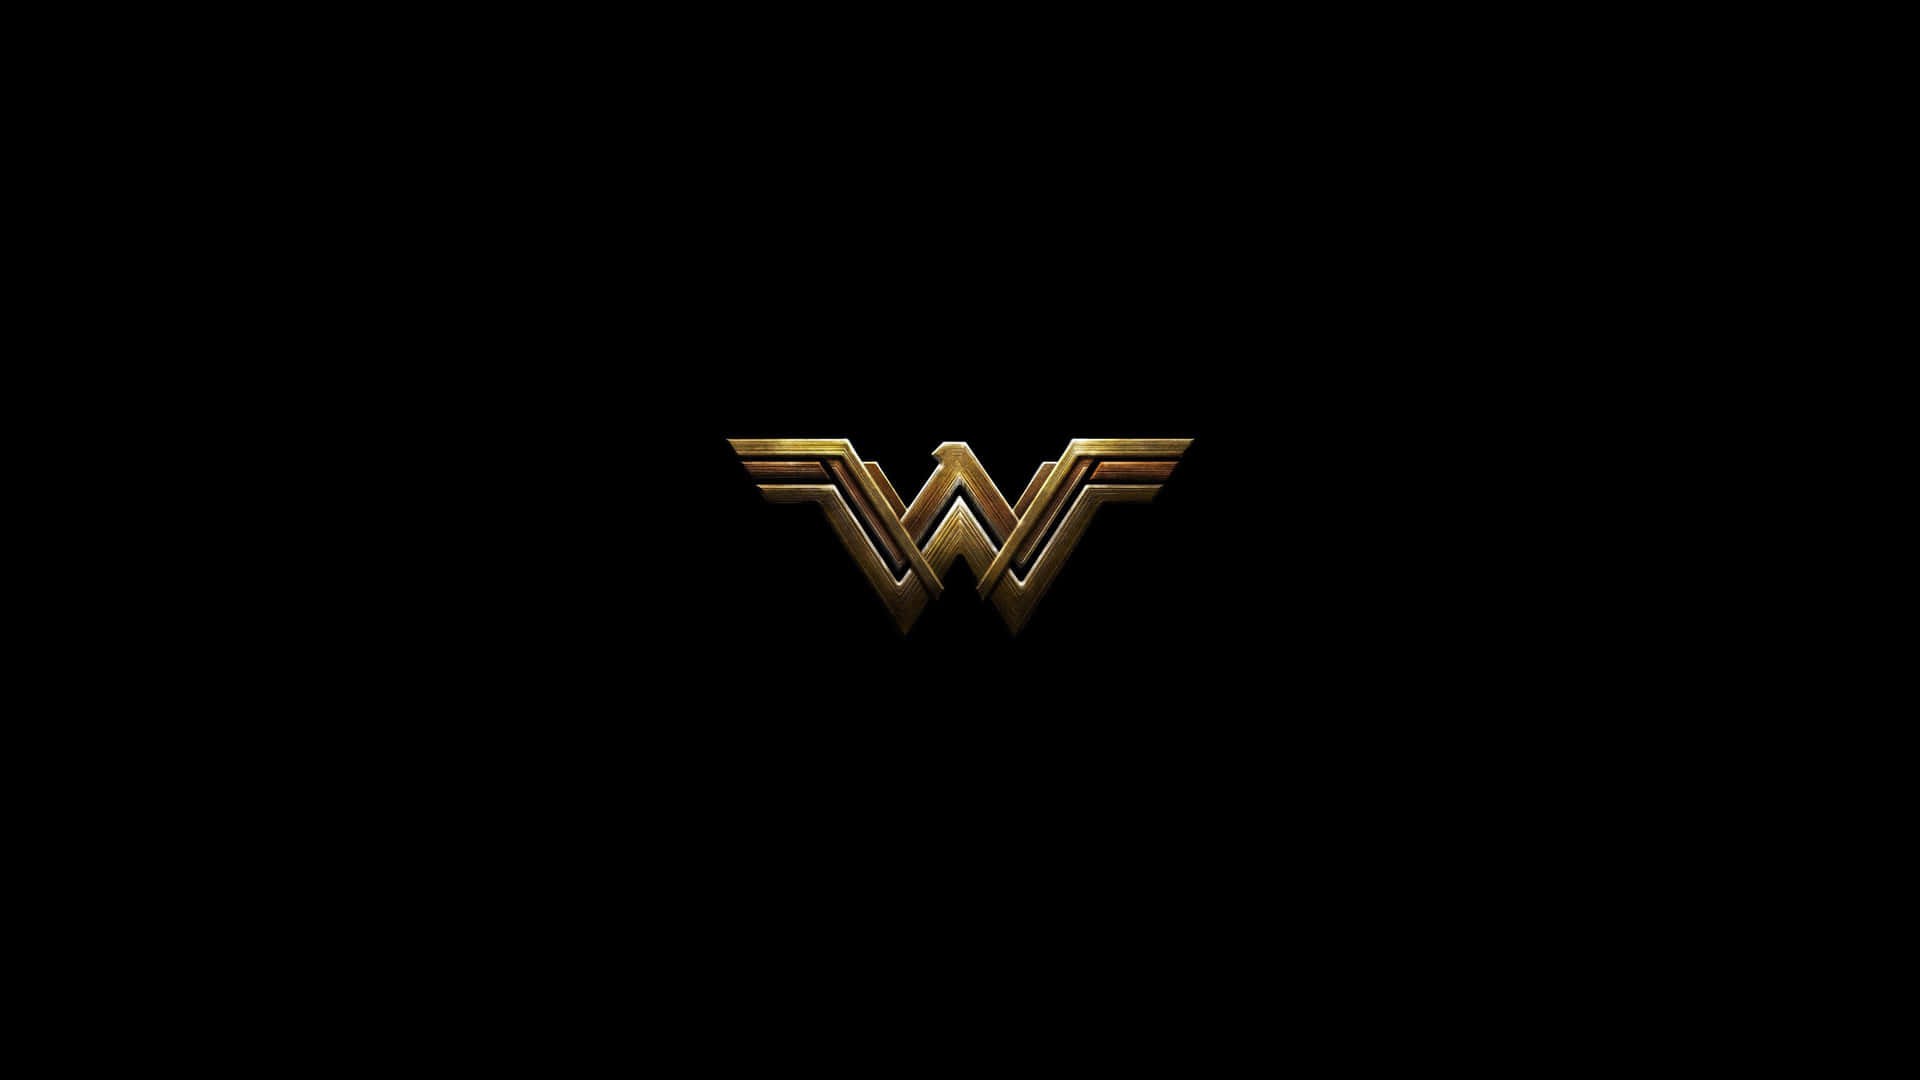 Wonderwoman 3840 X 2160 Bakgrund